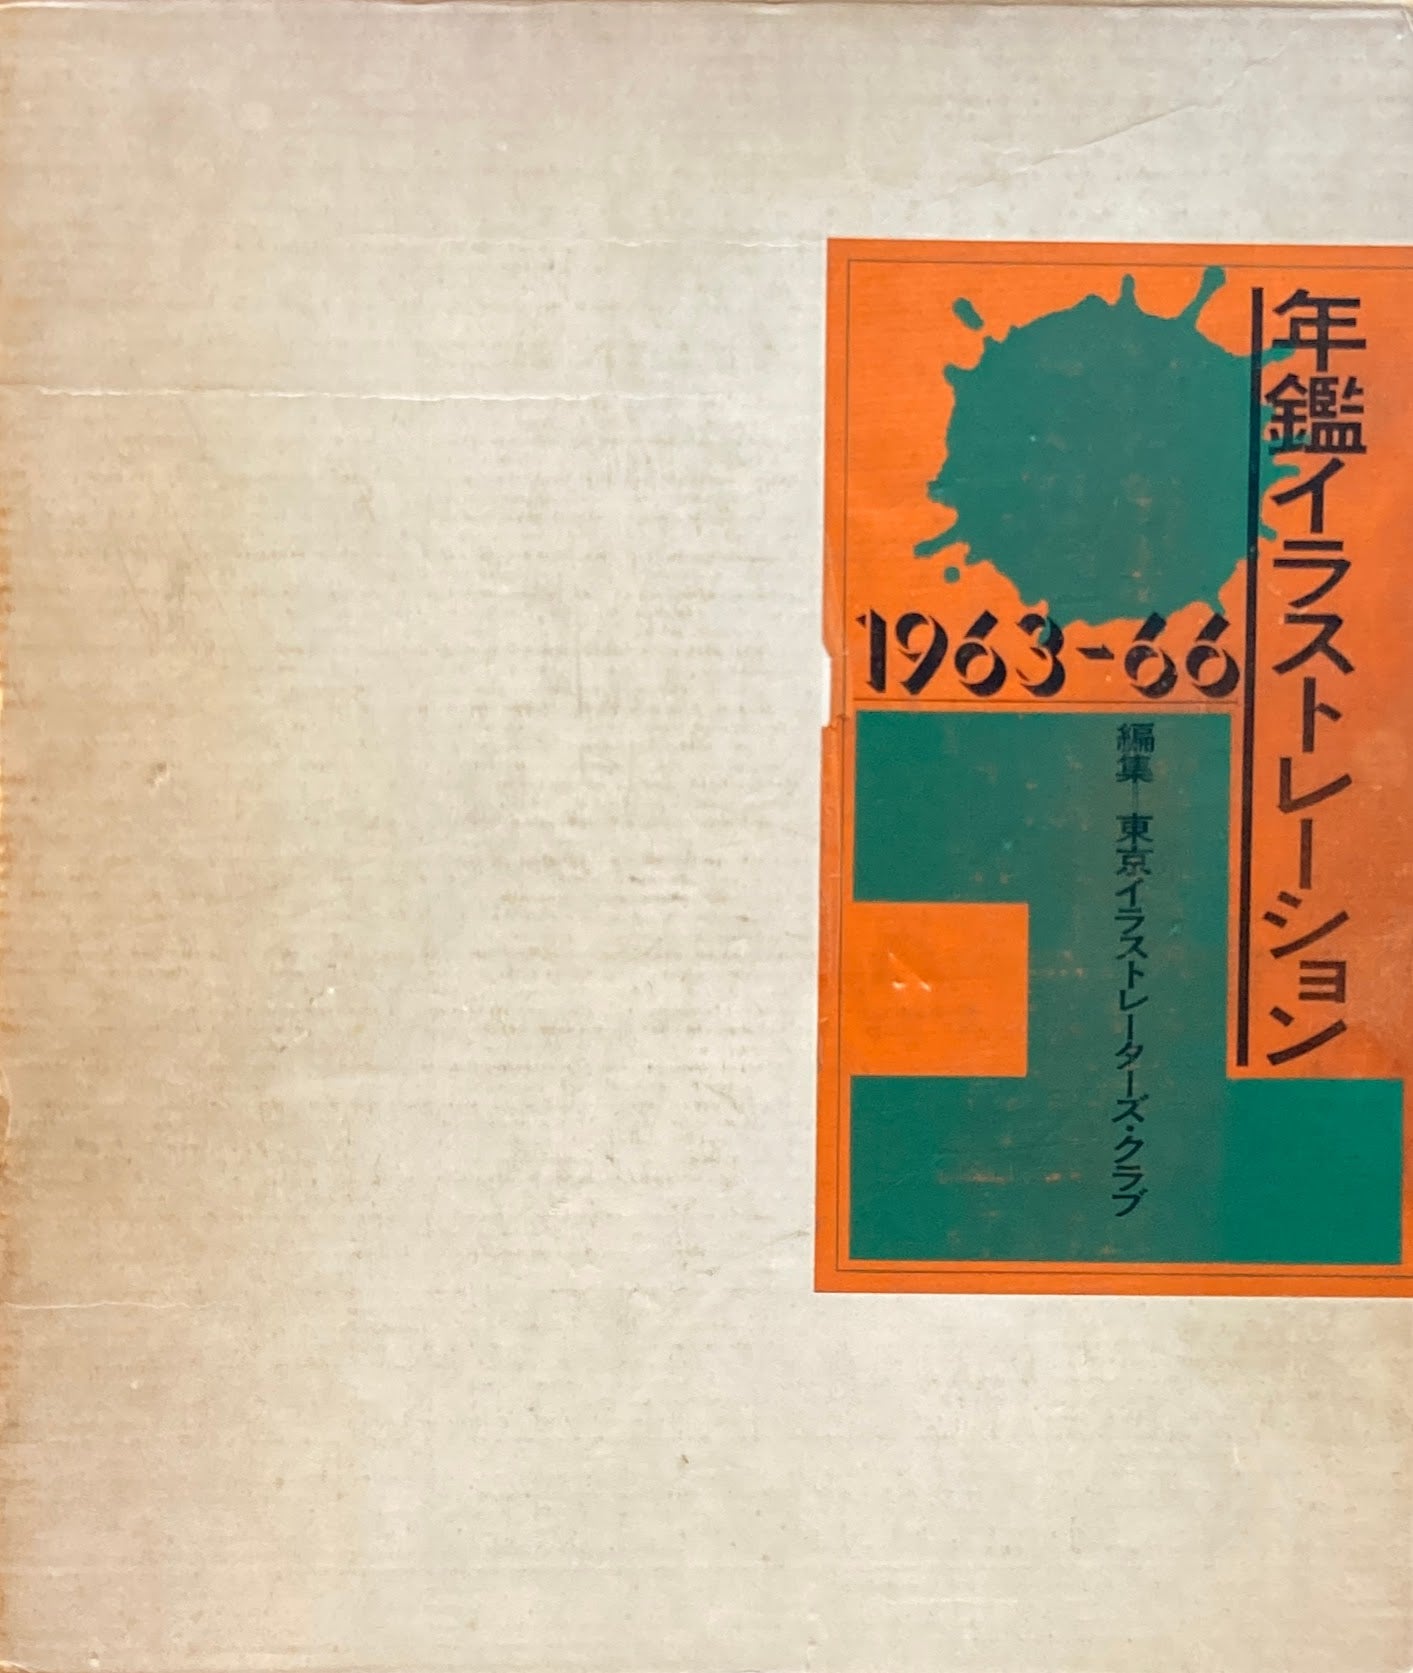 年鑑　イラストレーション　1963‐66　東京イラストレーターズクラブ　